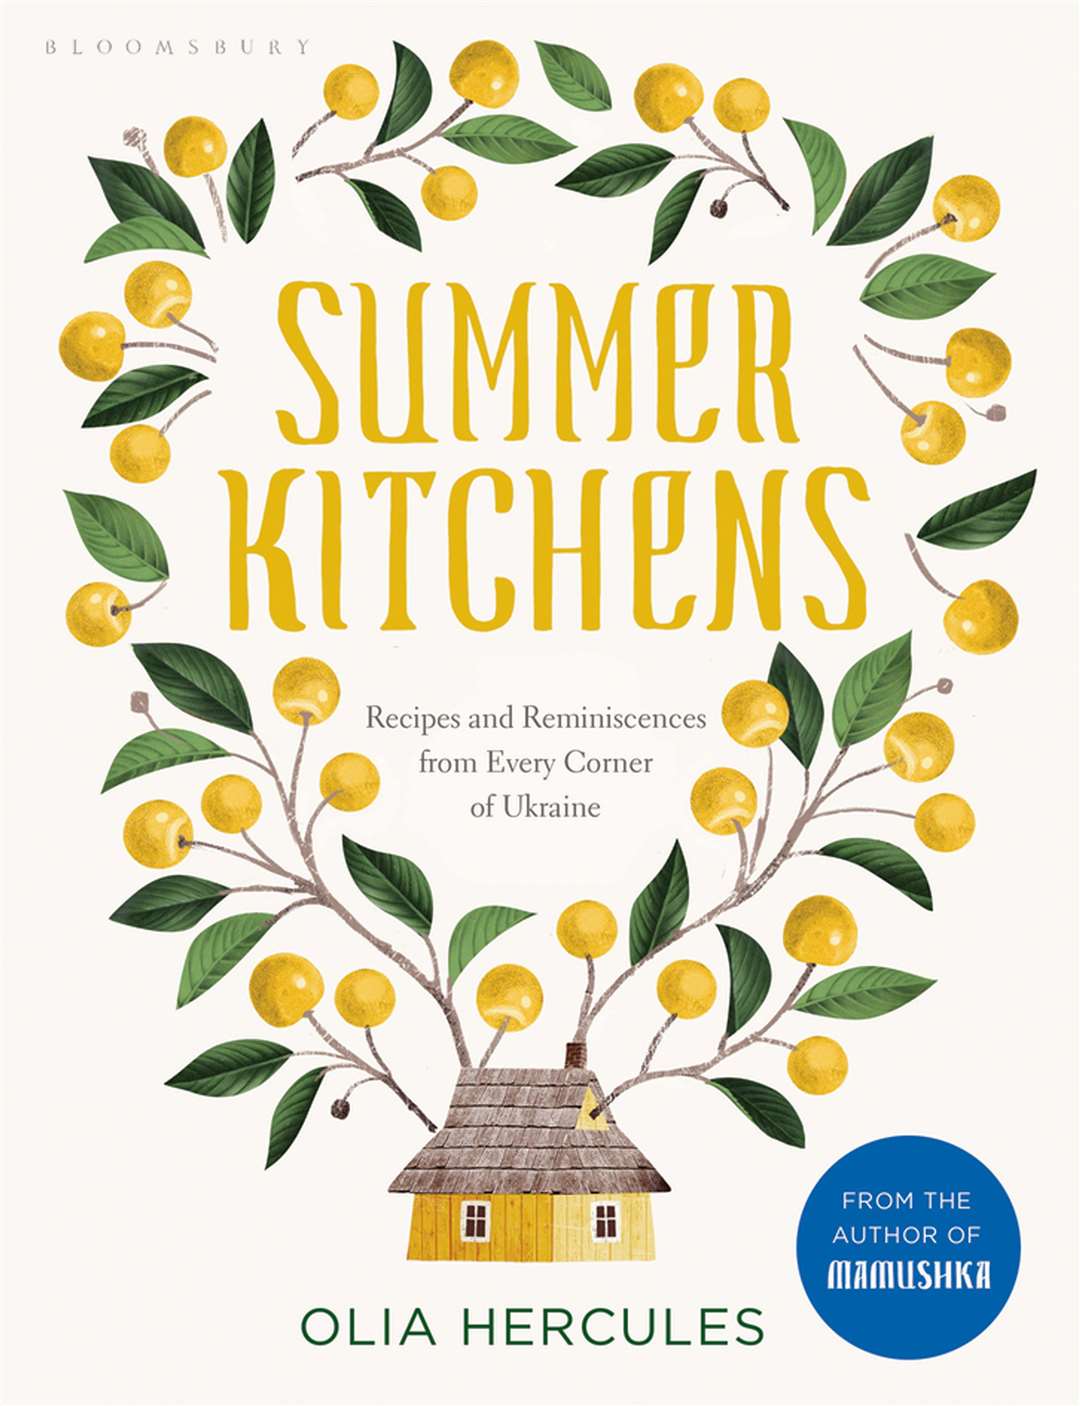 Summer Kitchens by Olia Hercules (£26, Bloomsbury).